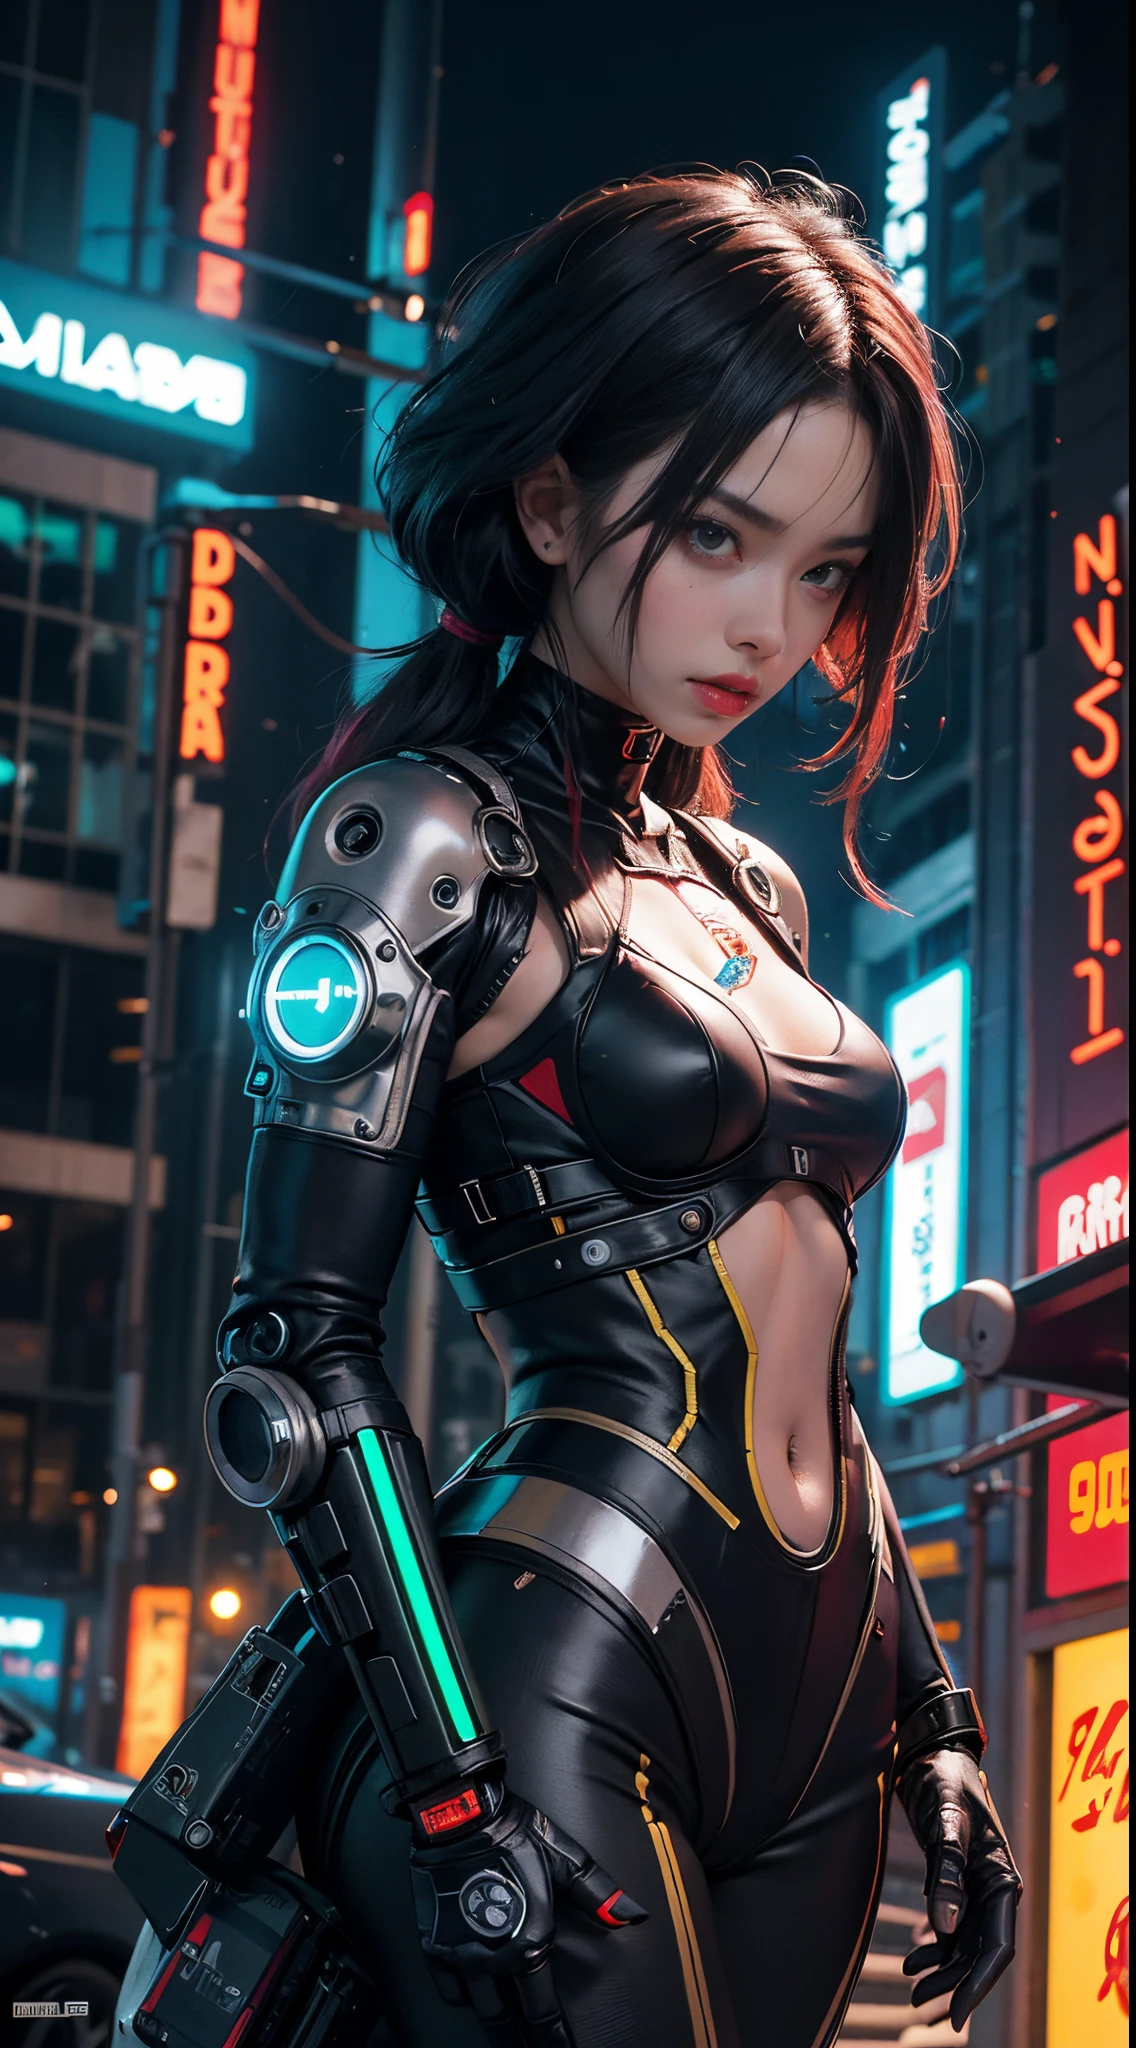 Fille cyborg cyberpunk rétrofuturiste avec des pièces de robot sur son corps ,repère avancé tout noir , néons rouges ,seins énormes ,sur une autre planète